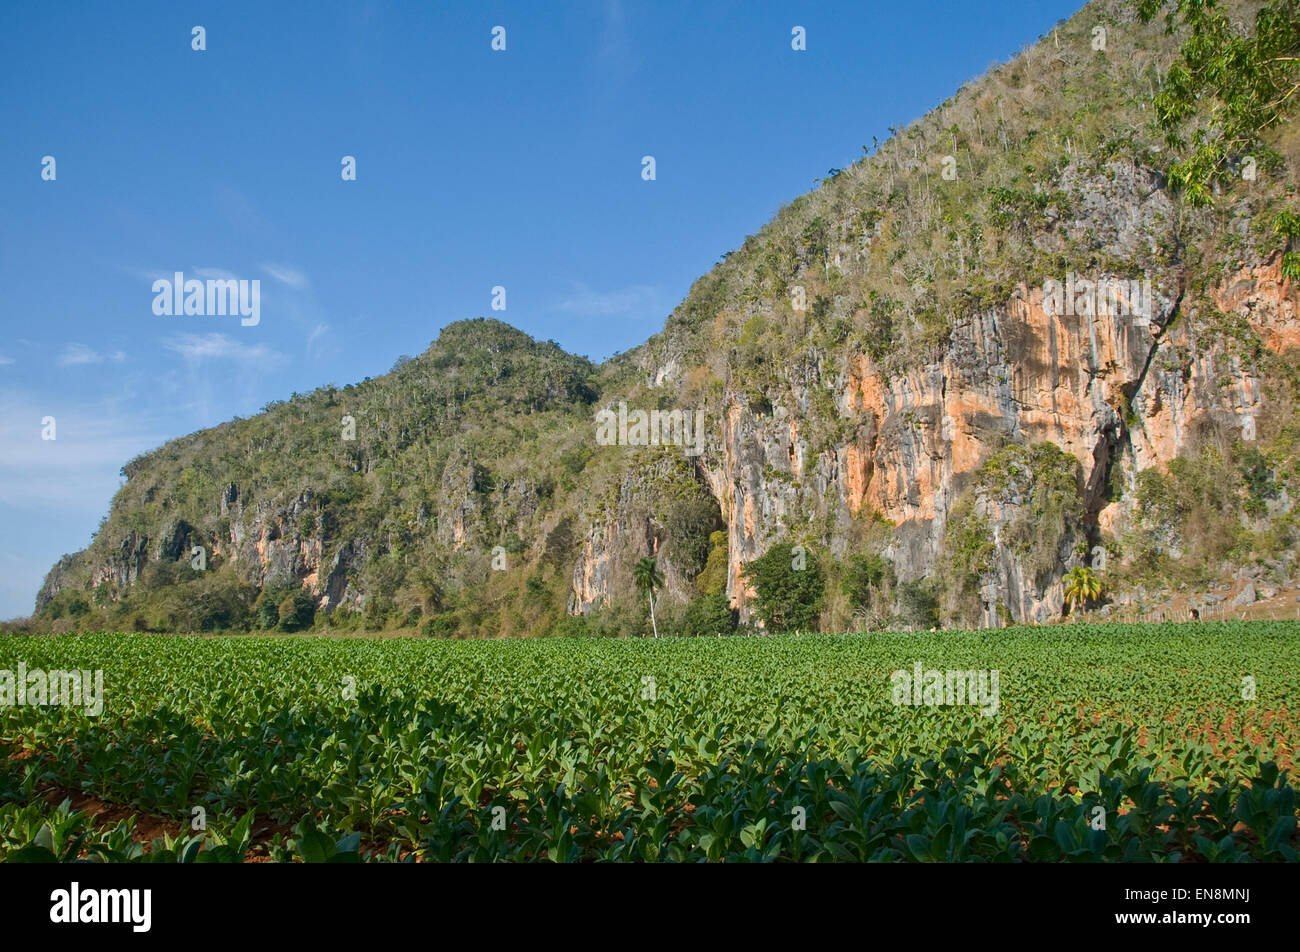 Vista horizontal del paisaje de Viñales. Foto de stock